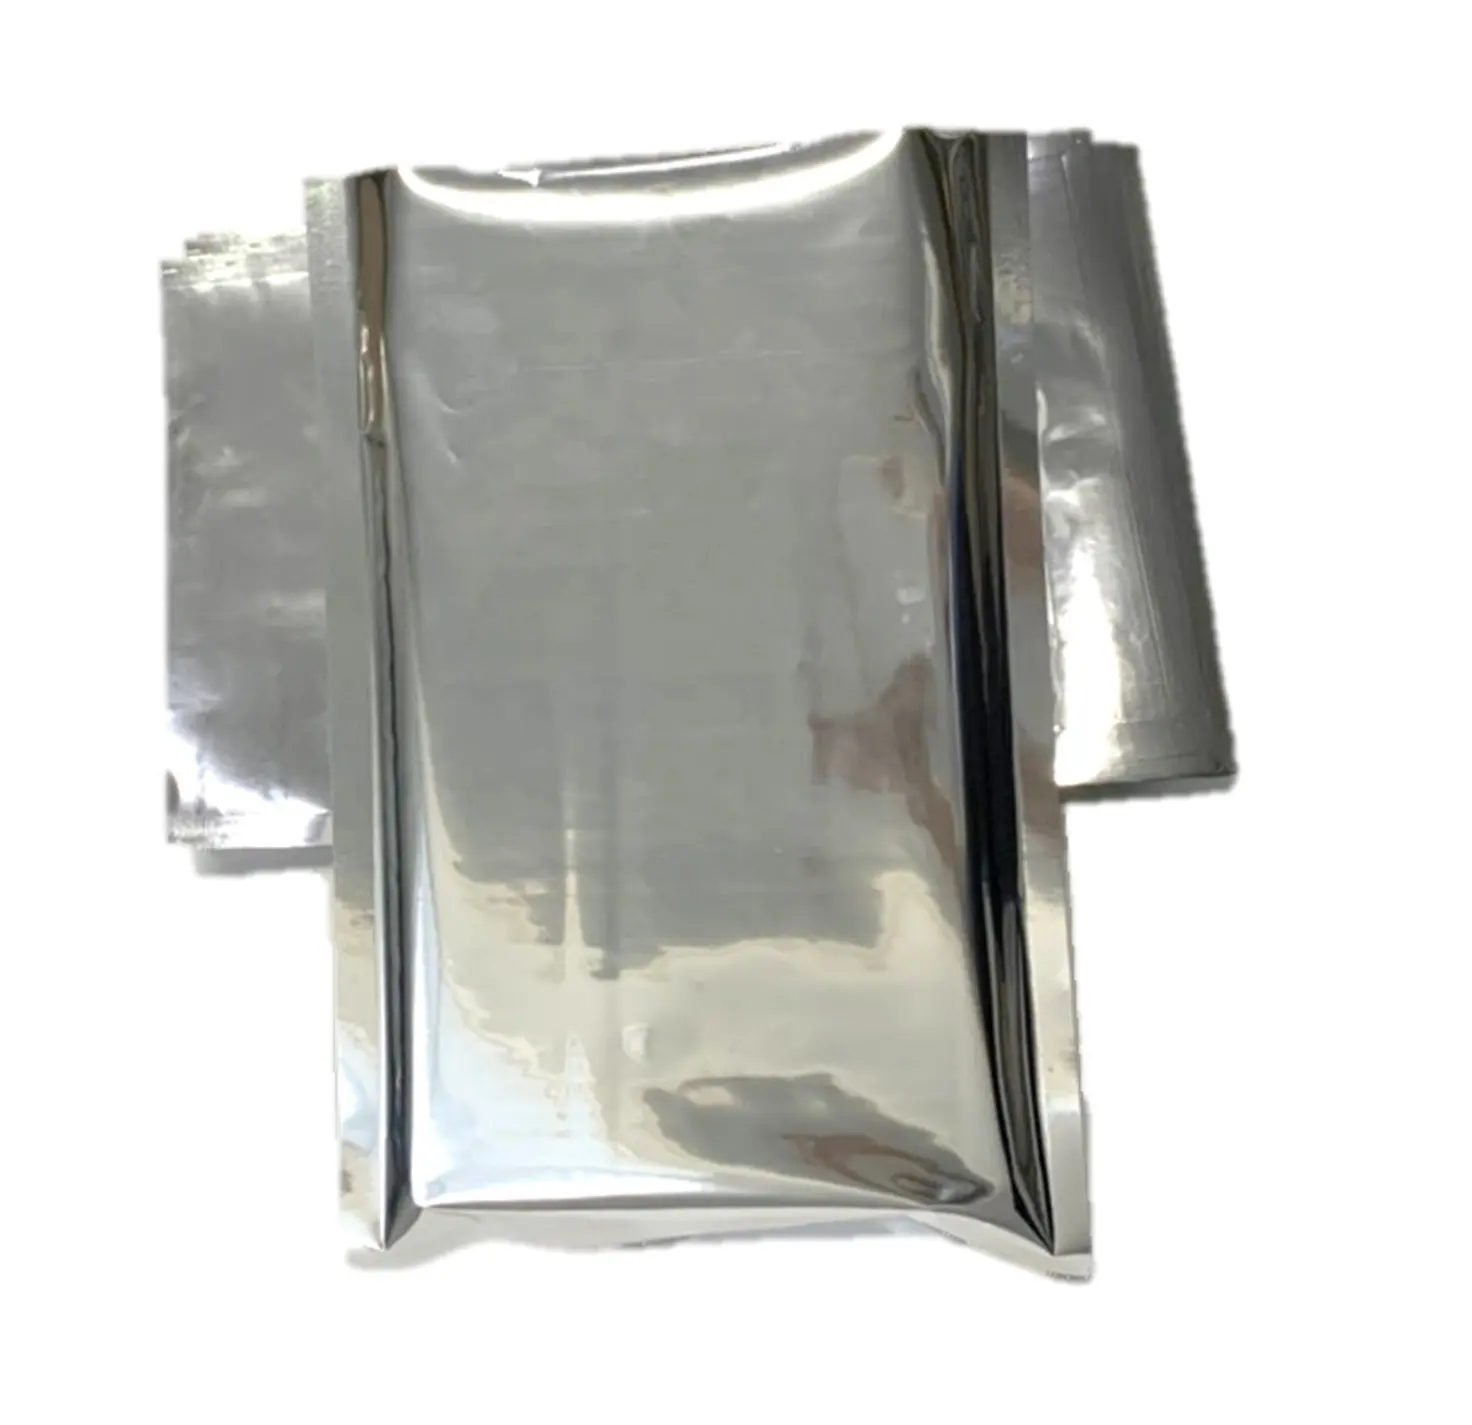 फैक्टरी मूल्य वैक्यूम टुकड़े टुकड़े में Metalized चांदी बैग के लिए औद्योगिक, उपकरणों, कृषि पैकेजिंग